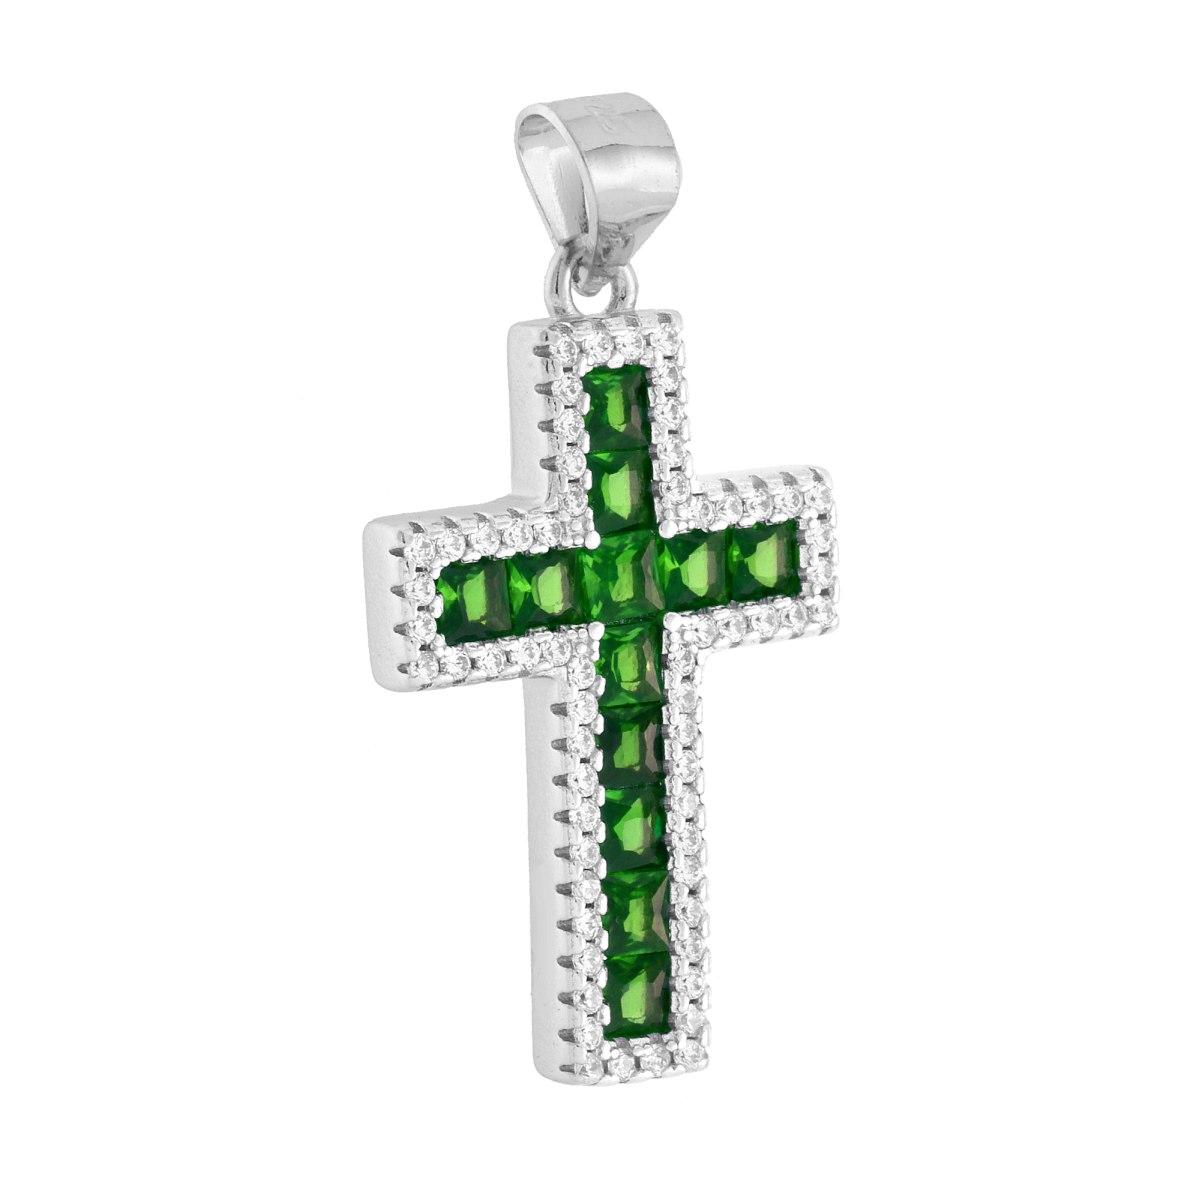 Ciondolo Croce con Cubic Zirconia Carre Verde Smeraldo contornati da Cubic Zirconia Bianchi in ARGENTO 925 Galvanica Rodio